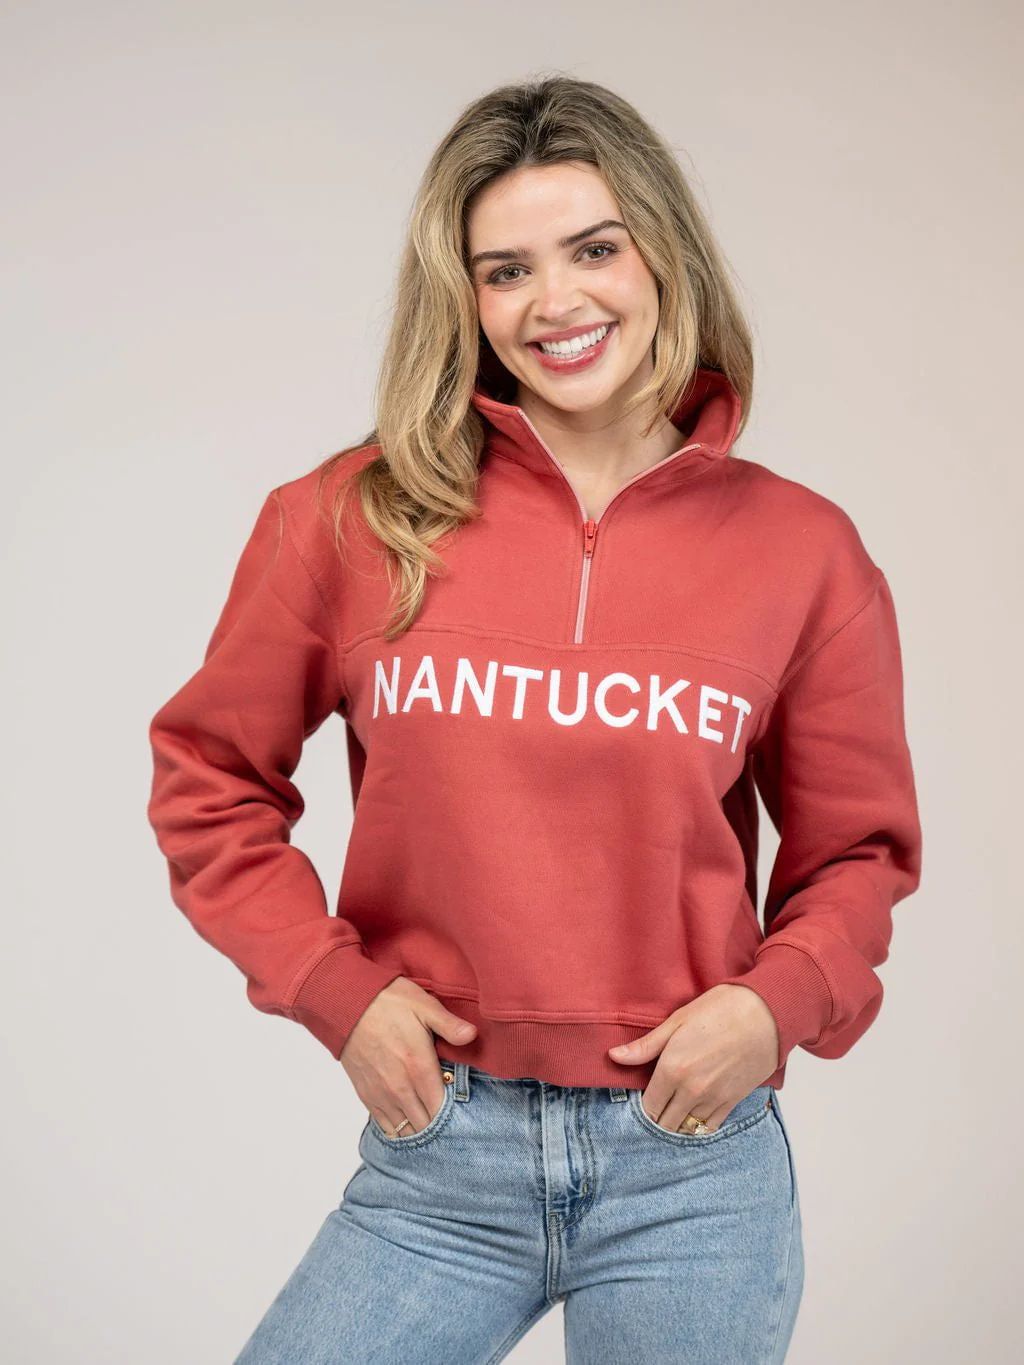 Nantucket Half Zip Sweatshirt in Nantucket Red | Beau & Ro